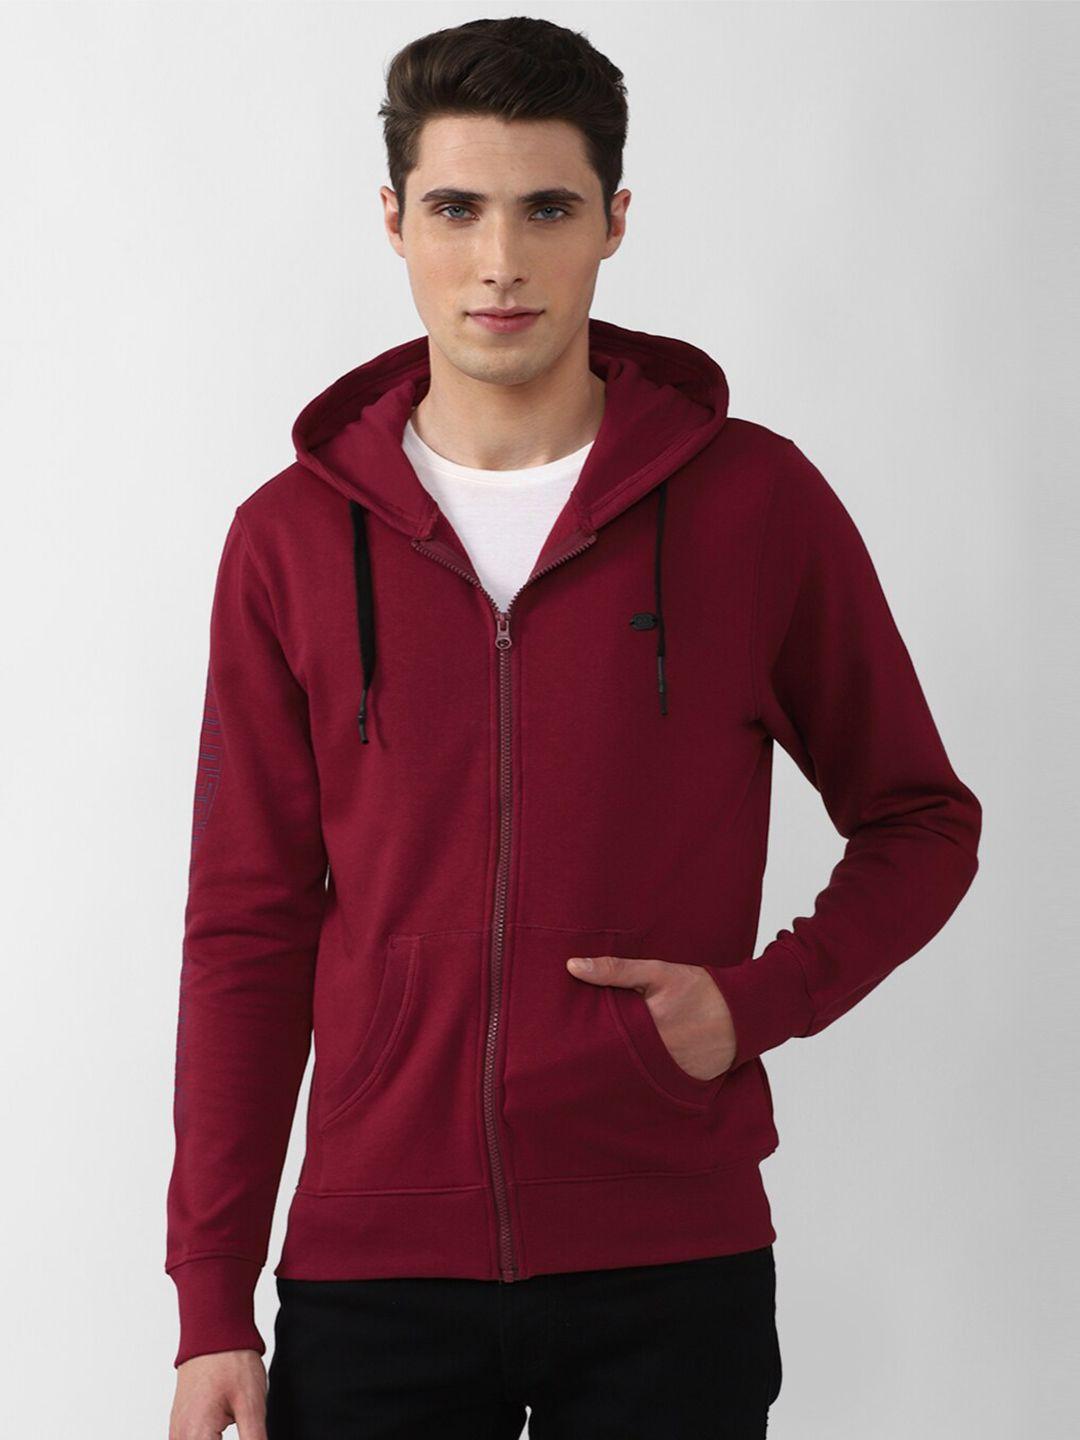 peter england casuals men maroon hooded cotton sweatshirt